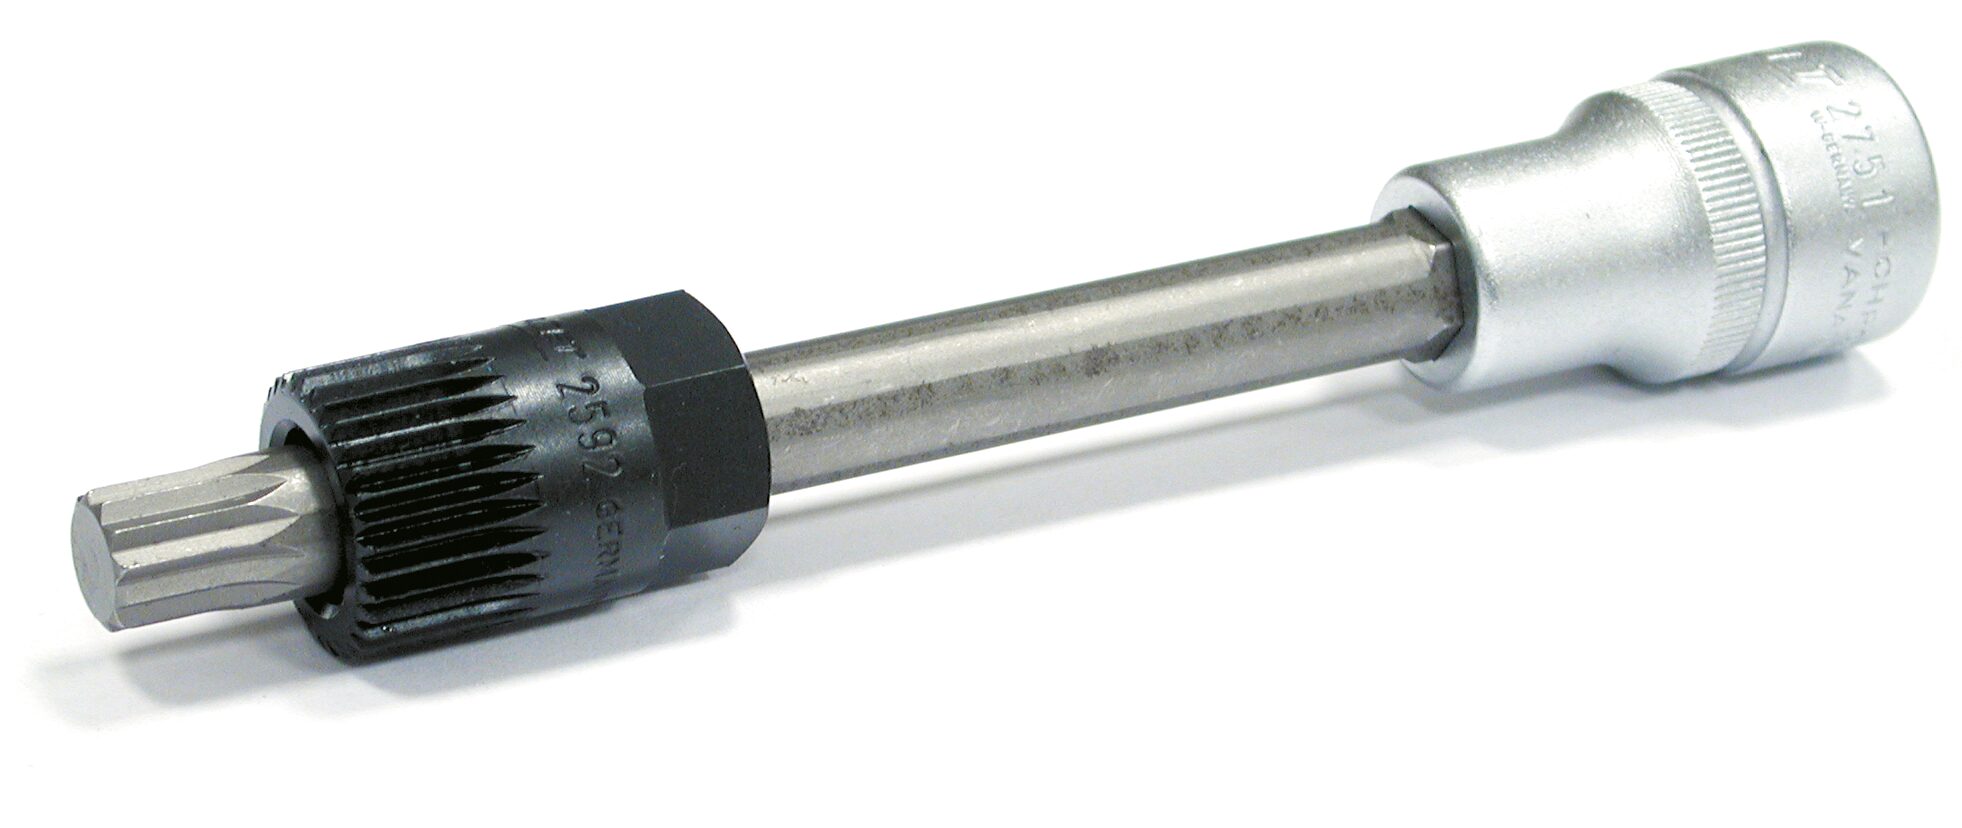 HAZET Keil(rippen)riemenscheibe-Werkzeug 4641/2 · Vierkant hohl 12,5 mm (1/2 Zoll) · Innen Vielzahn Profil XZN · Anzahl Werkzeuge: 2